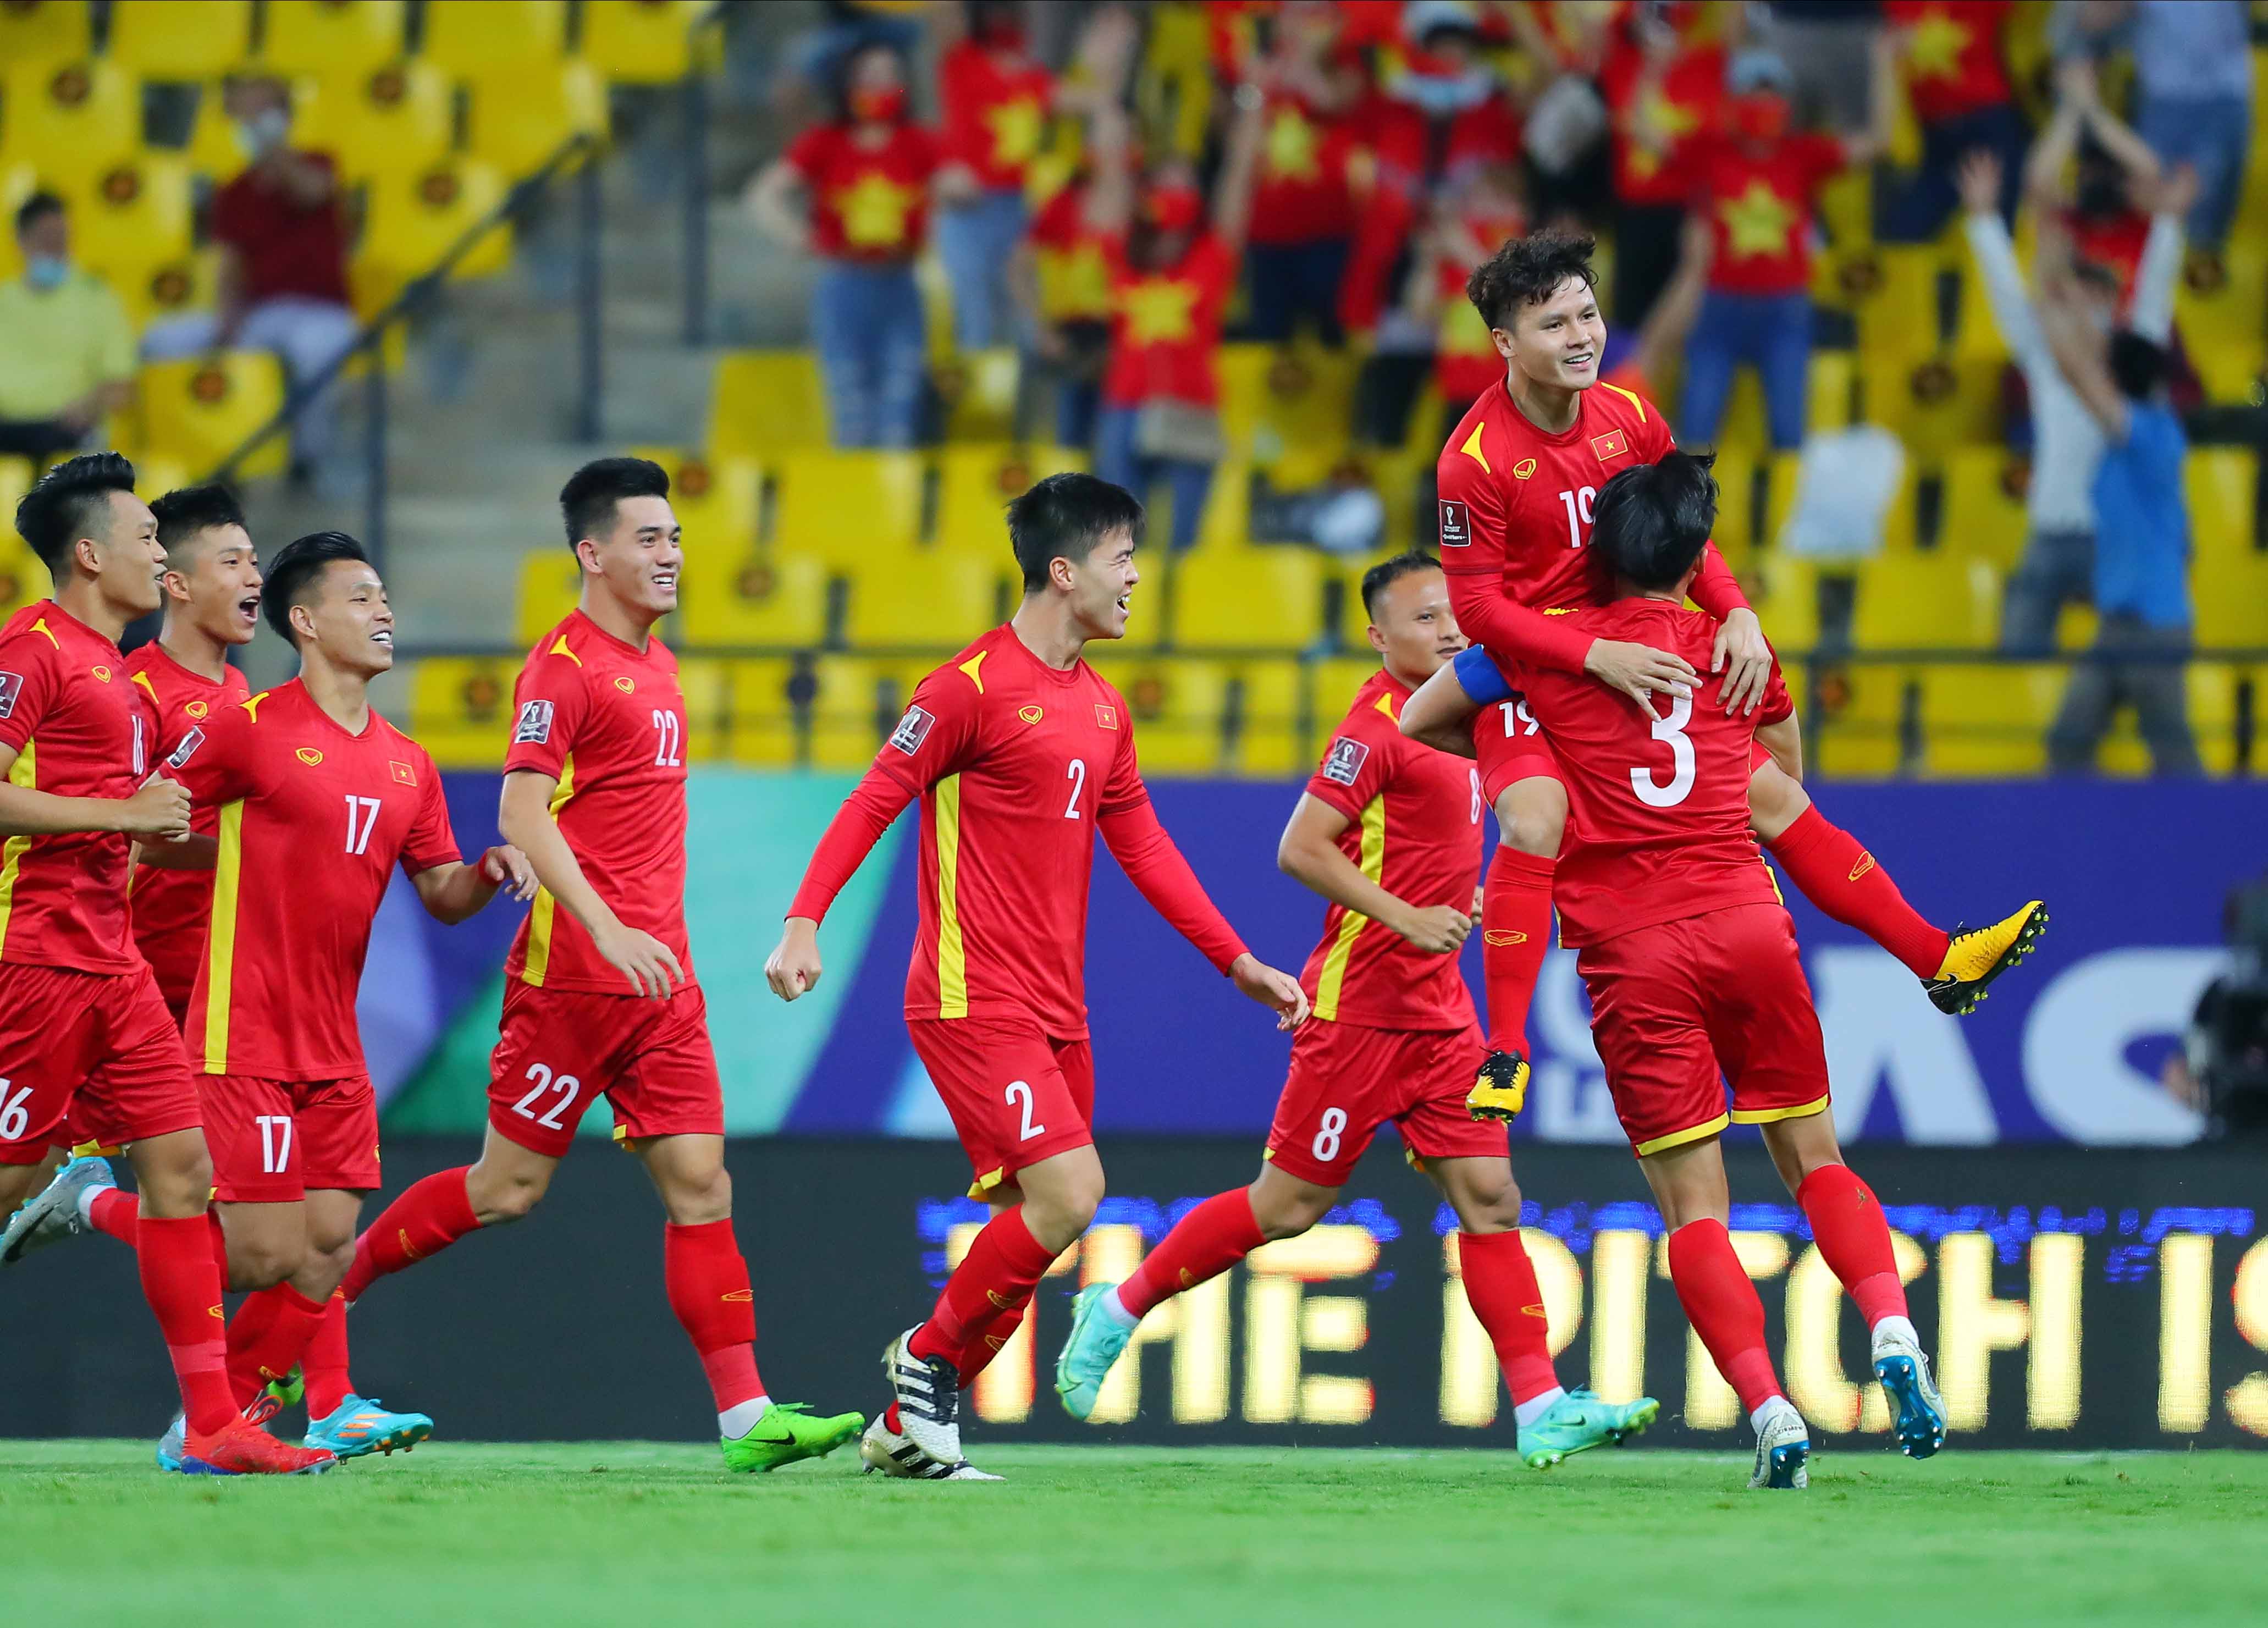 Thưởng thức bức ảnh đội tuyển Việt Nam hào hứng, nỗ lực và tinh thần đoàn kết của các cầu thủ sẽ khiến mọi người tự hào về đội bóng quê hương.